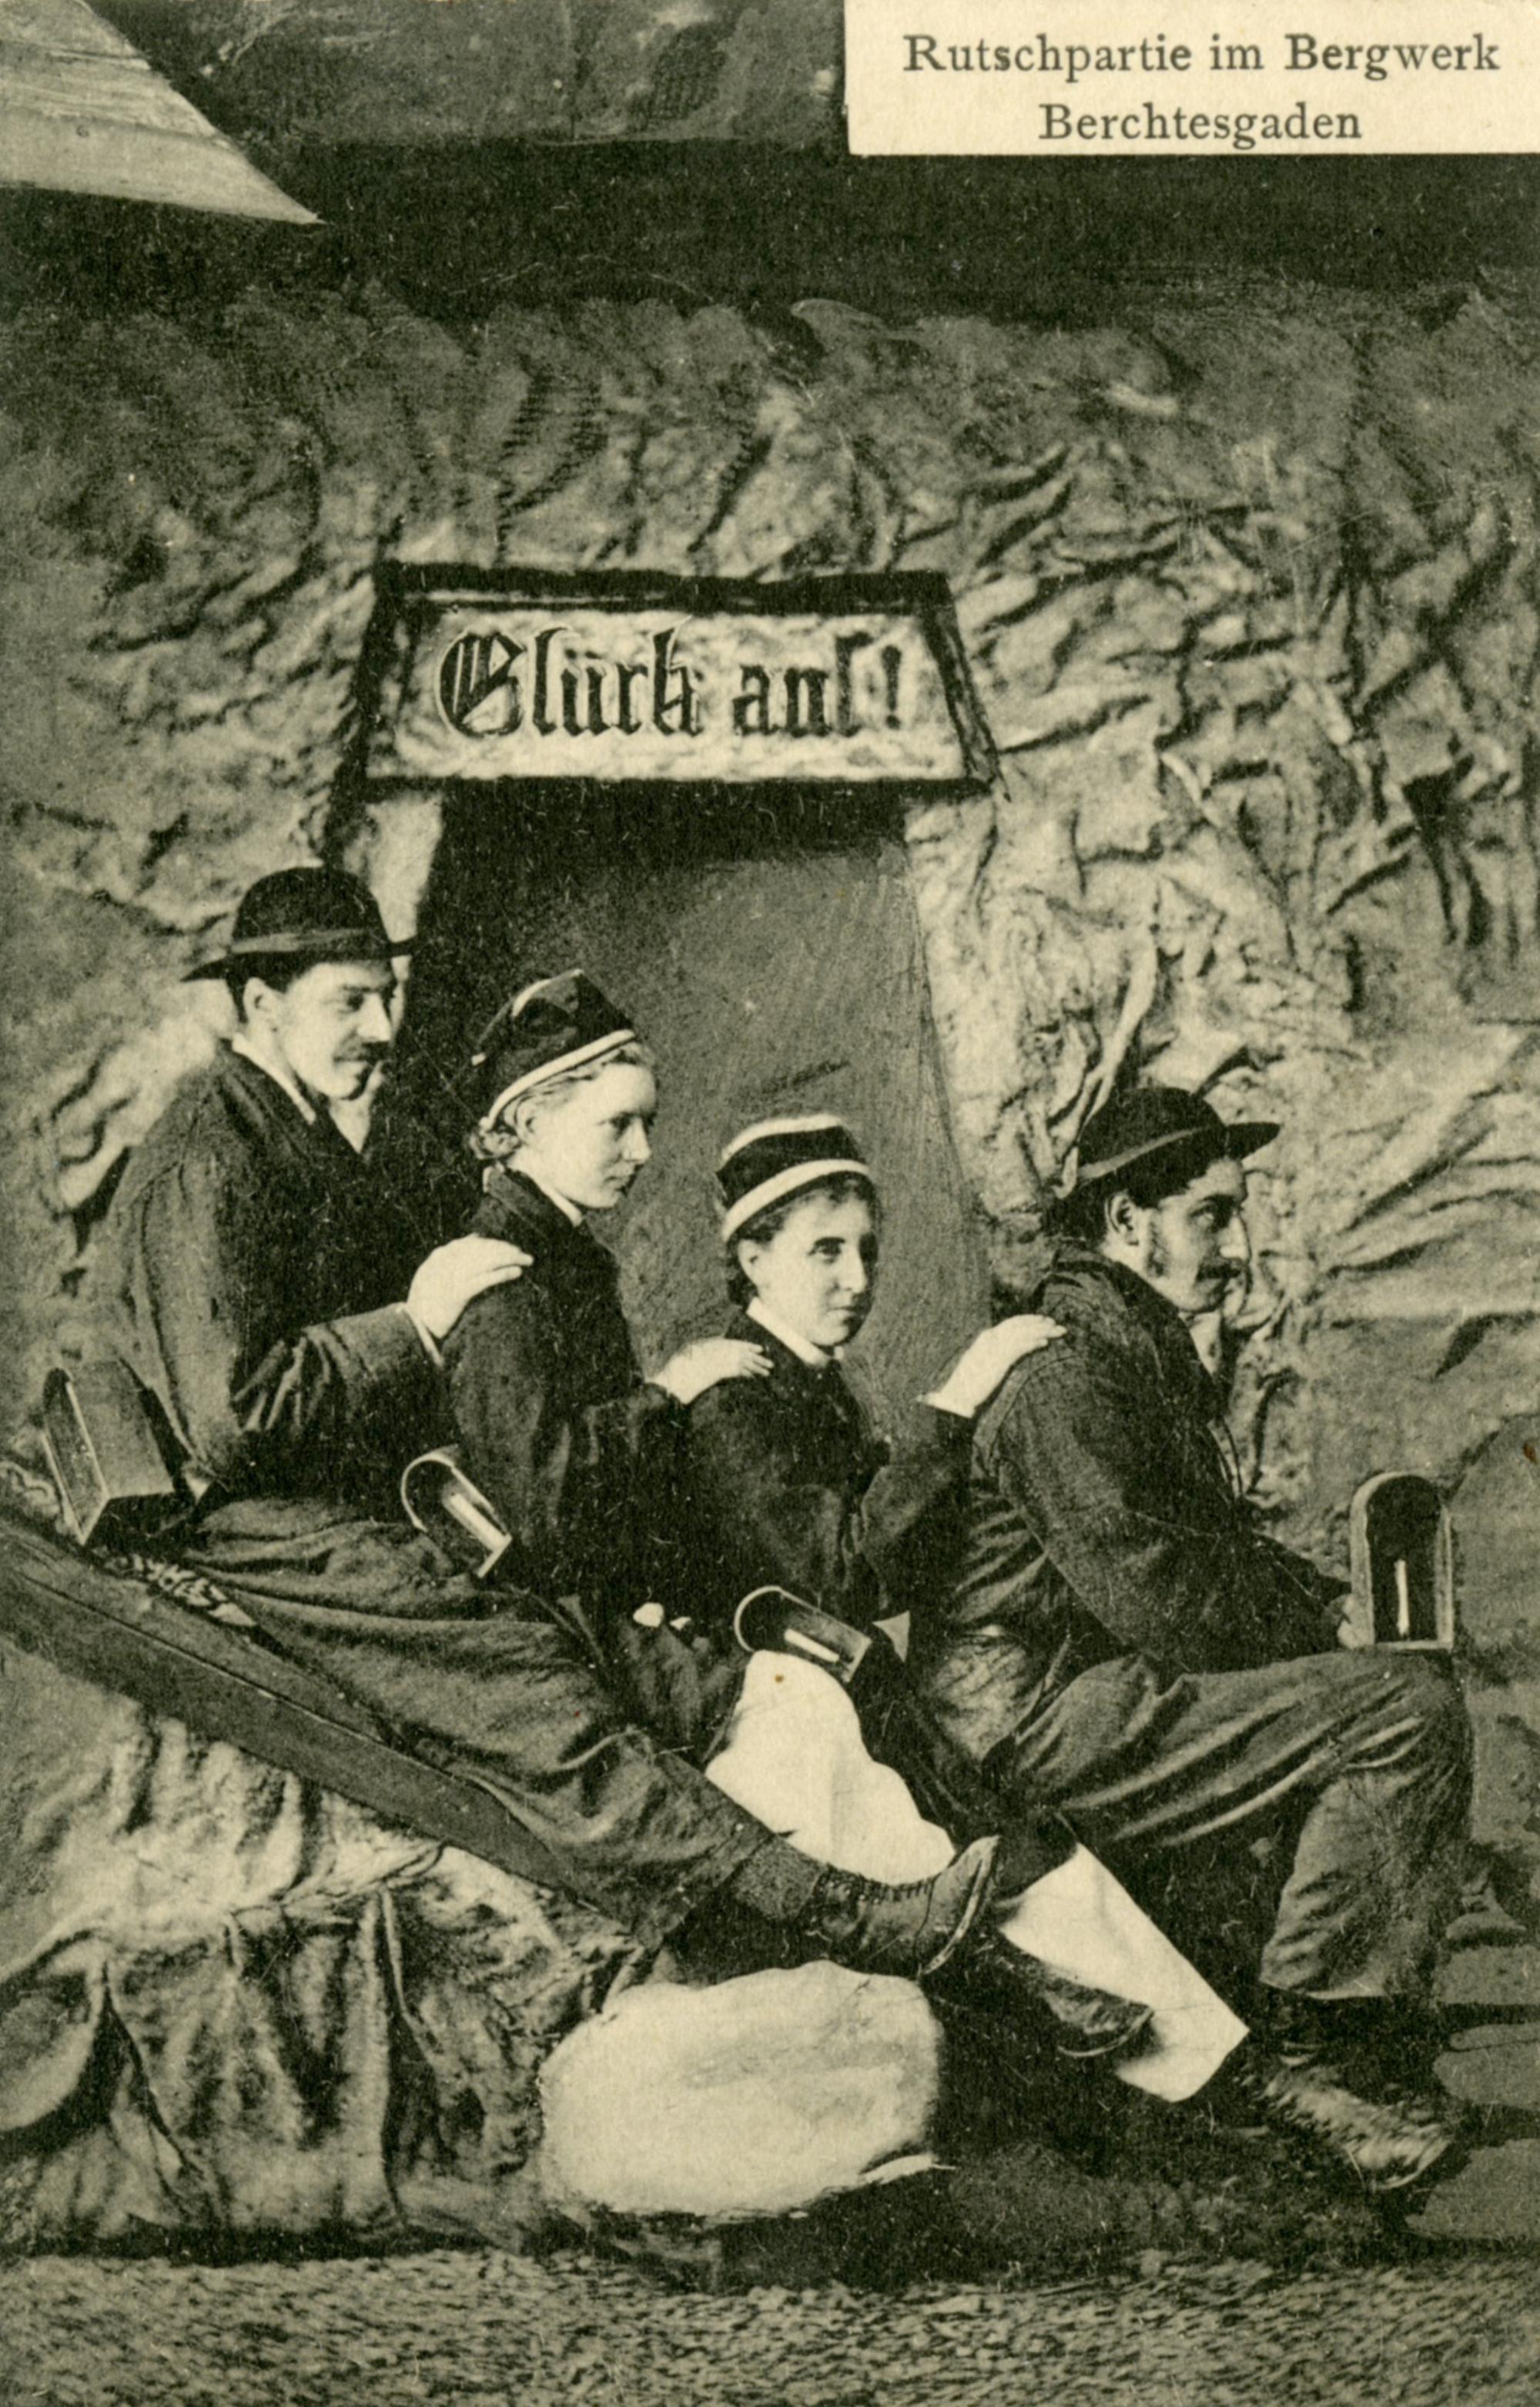 Rutschpartie für Besucherinnen im Salzbergwerk Berchtesgaden: Postkarte, 1907